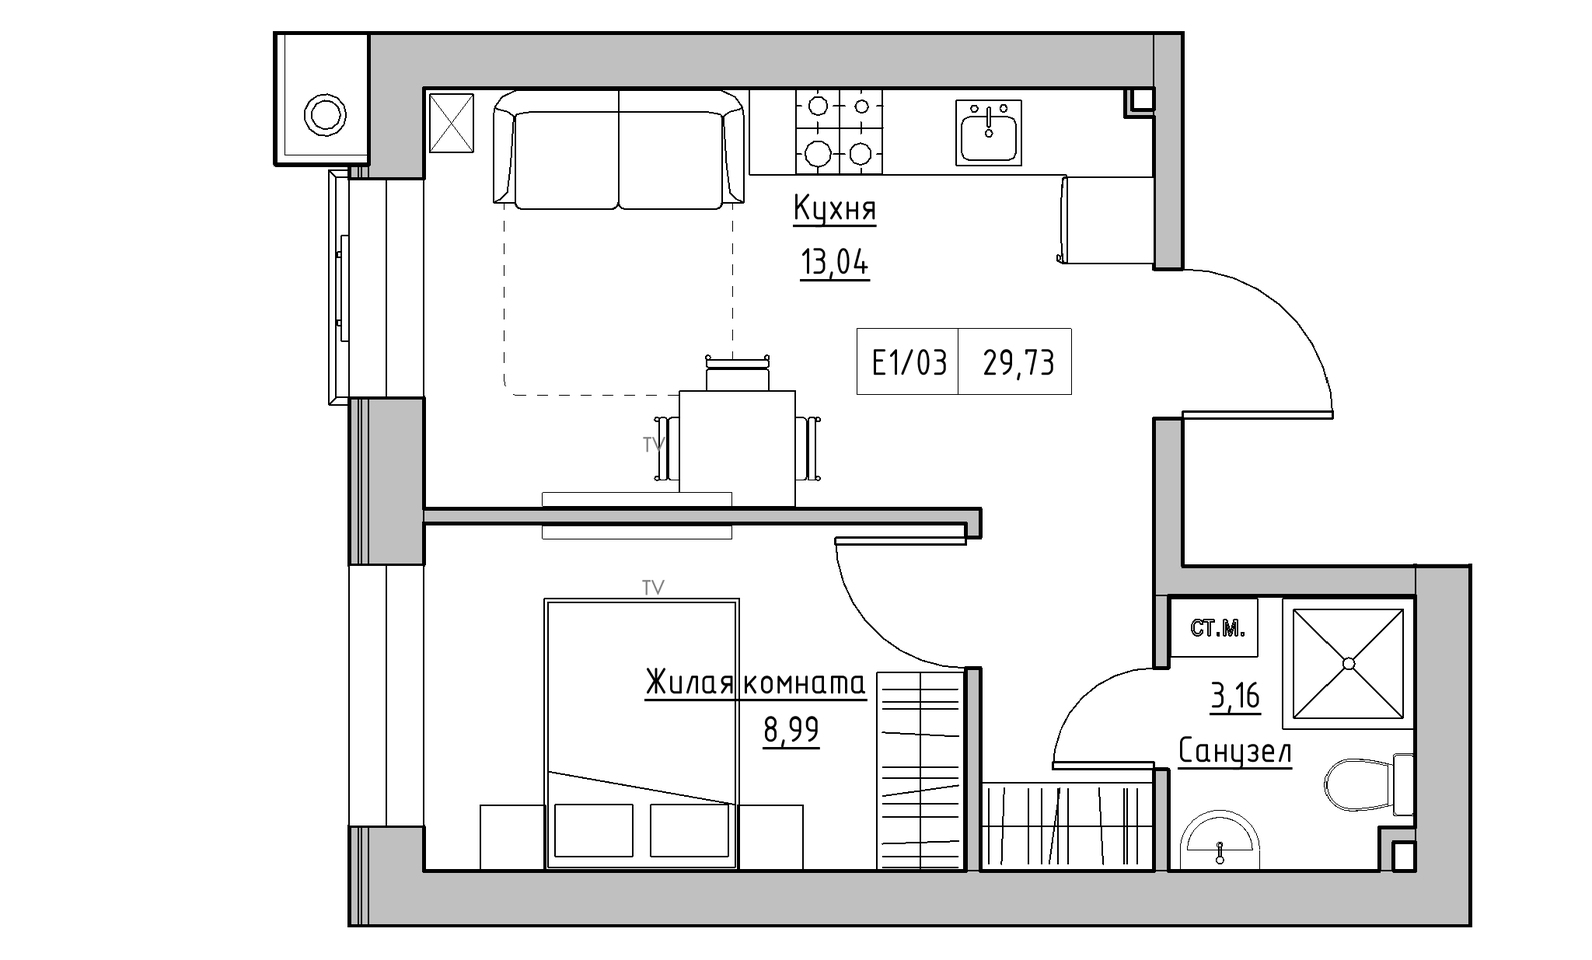 Планировка 1-к квартира площей 29.73м2, KS-014-01/0012.